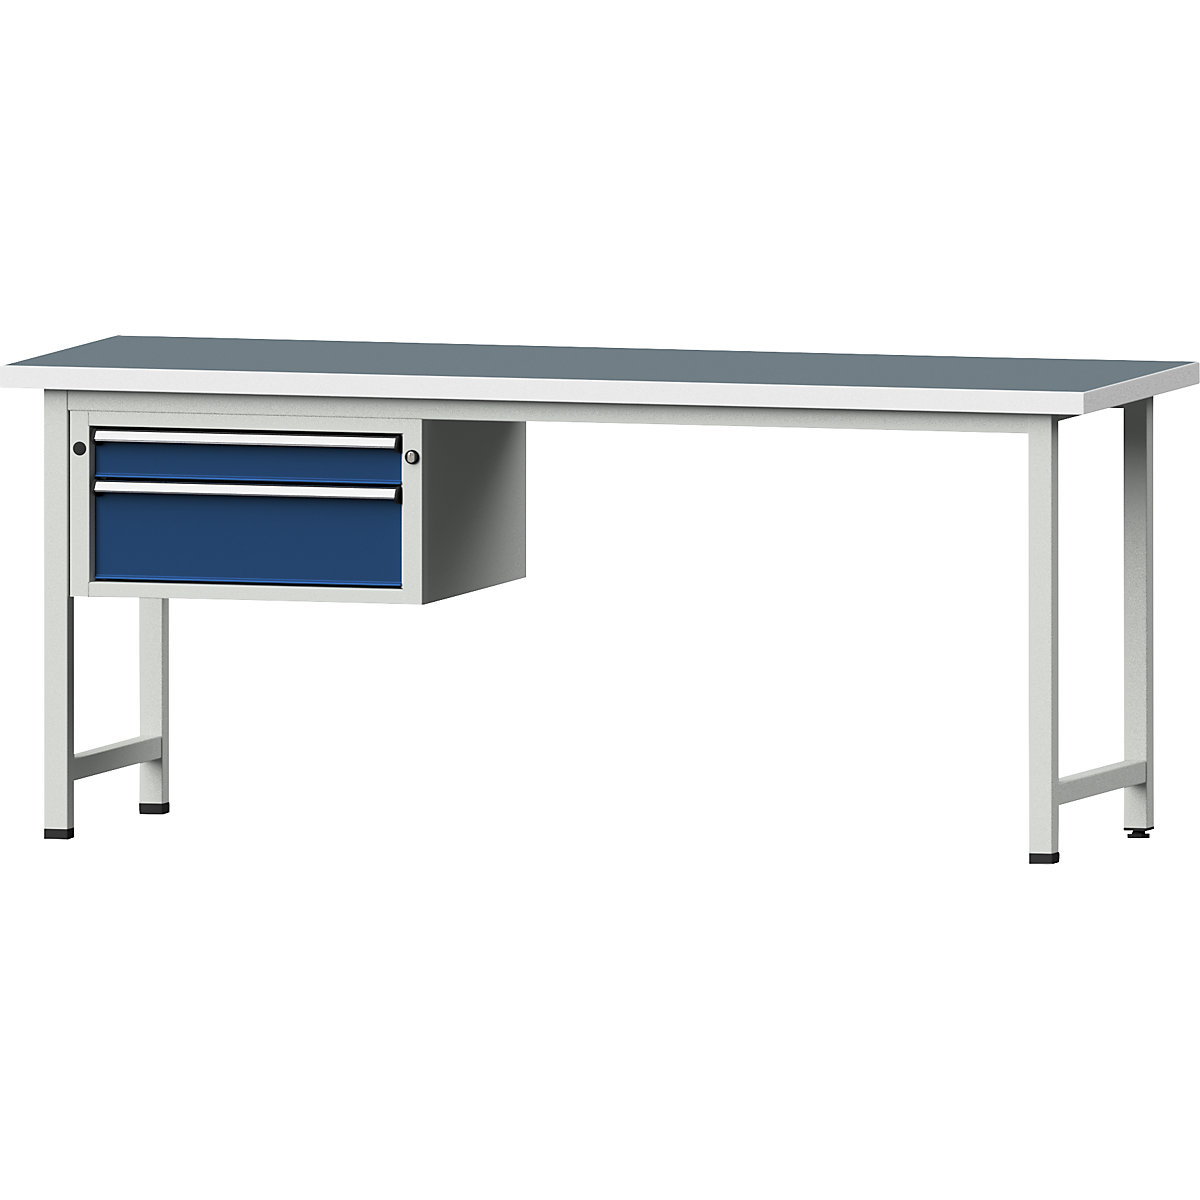 Dílenský stůl s rámovou konstrukcí – ANKE, 2 zásuvky, šířka 2000 mm, univerzální deska-7